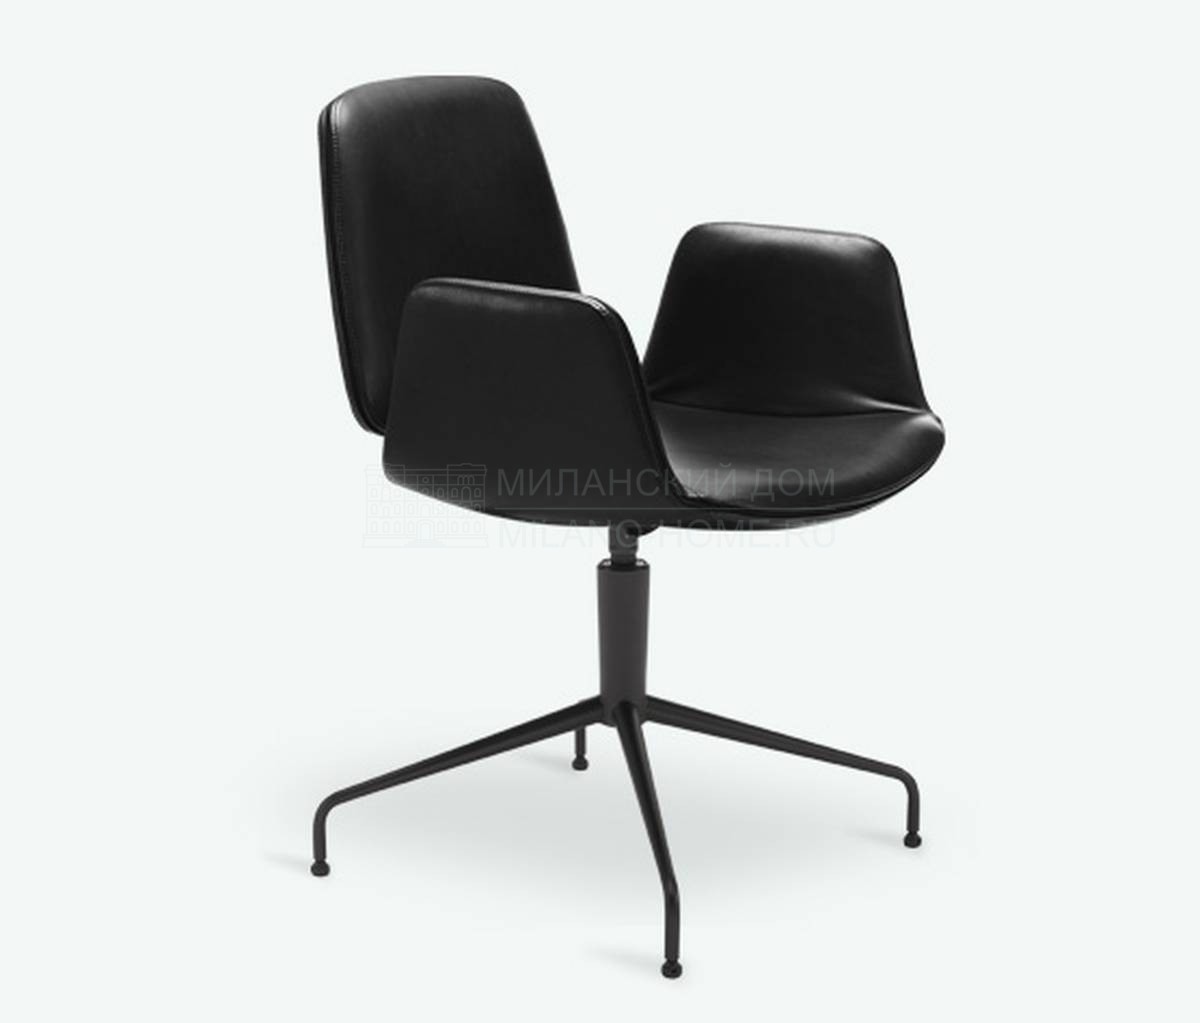 Полукресло Tilda chair black leather из Германии фабрики FREIFRAU